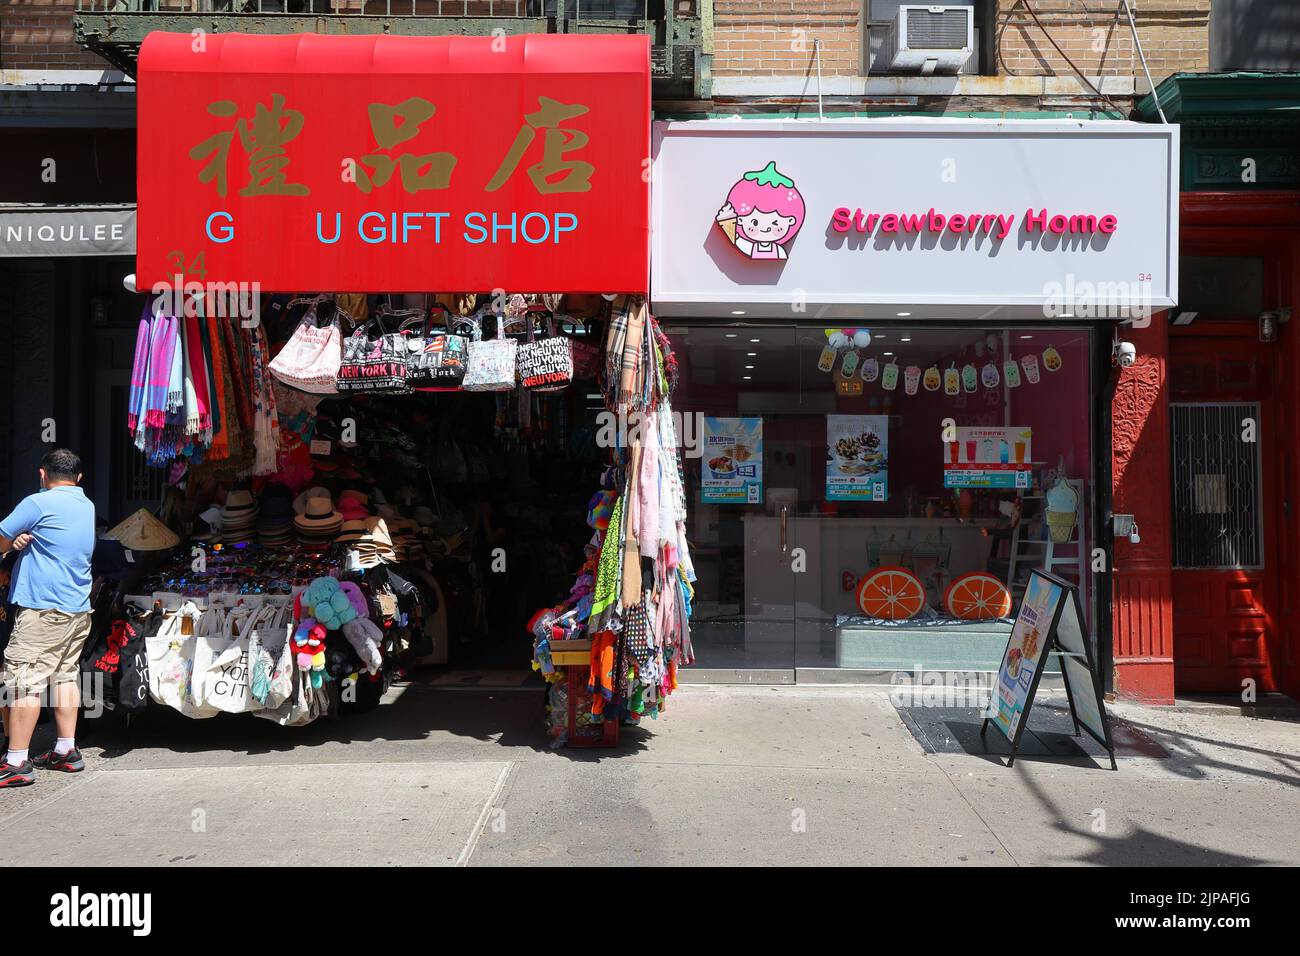 Tienda de regalos, Strawberry Home, 34 Mott St, Nueva York, Nueva York, Nueva York, foto del escaparate de un té de burbujas y una tienda de helados de servicio suave en Manhattan Chinatown. Foto de stock